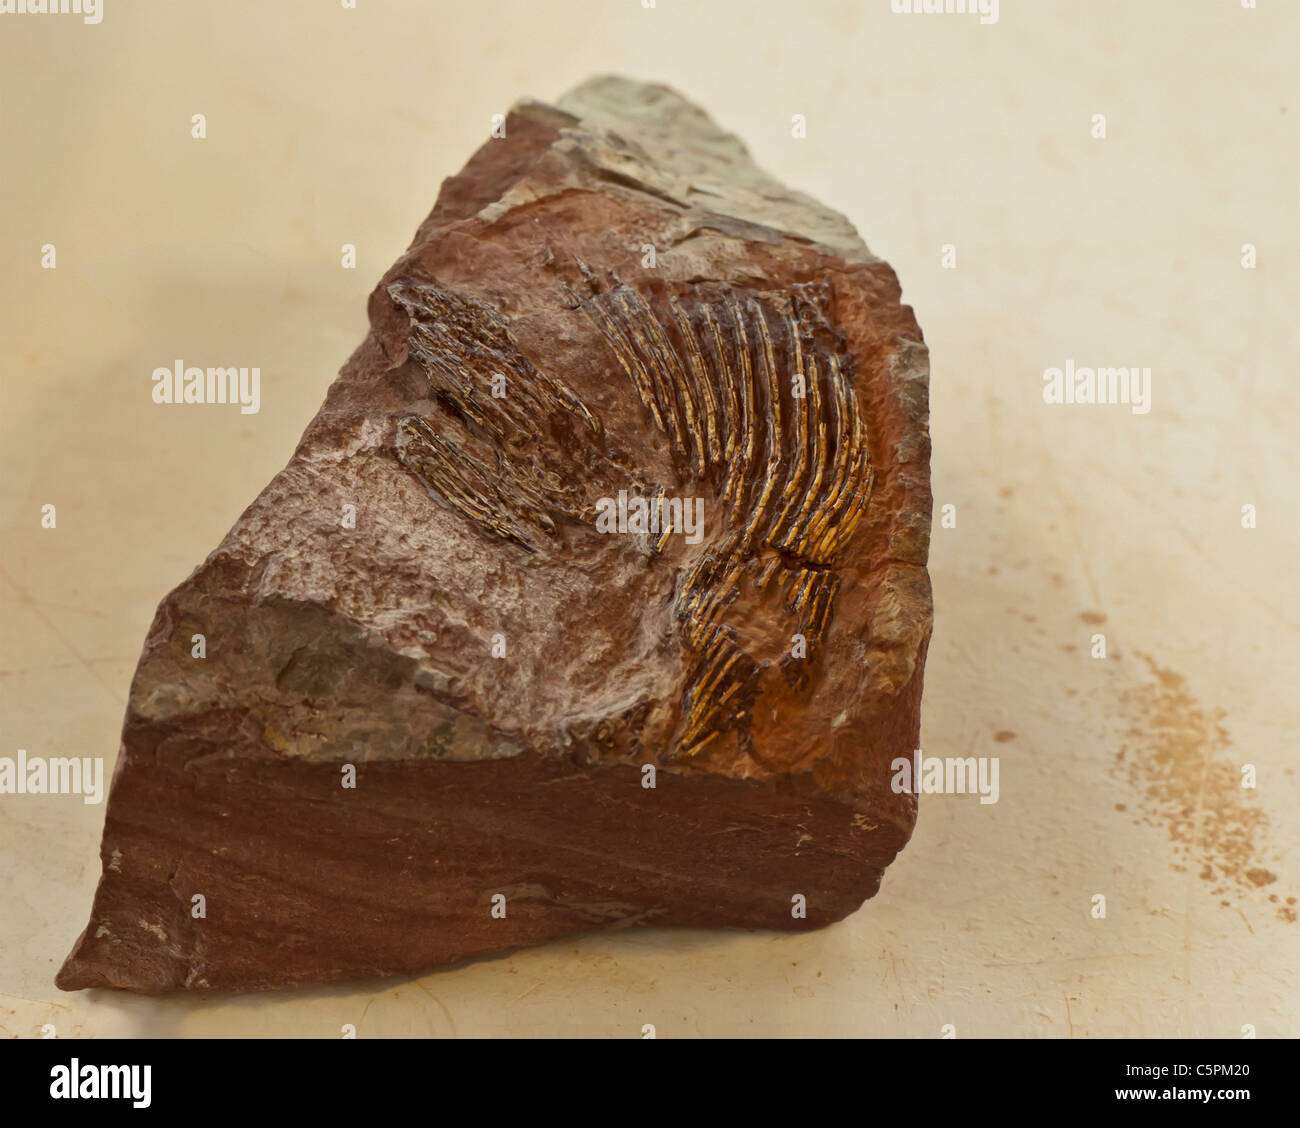 Esemplare di Coelacanthus combustibili. Immagine presa al San Giorgio di scoperta di dinosauri sito a Johnson agriturismo a San Giorgio, Utah. Foto Stock